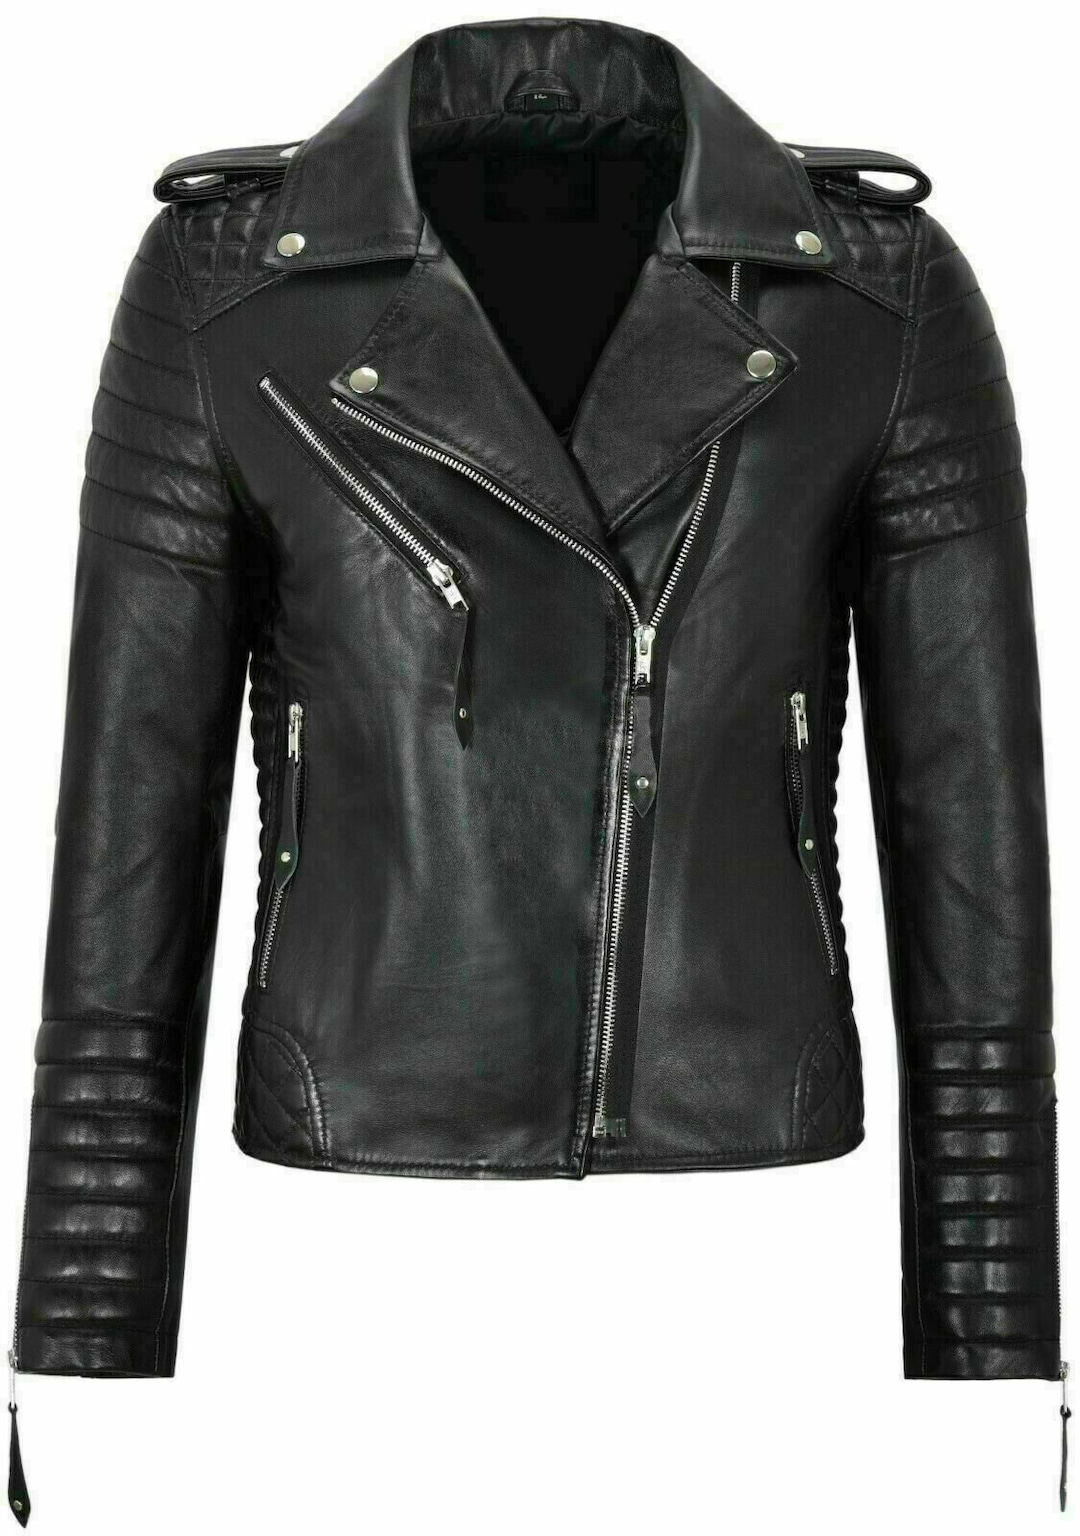 Custom Leather Jacket Women Motorbike Jacket Black Leather - Etsy